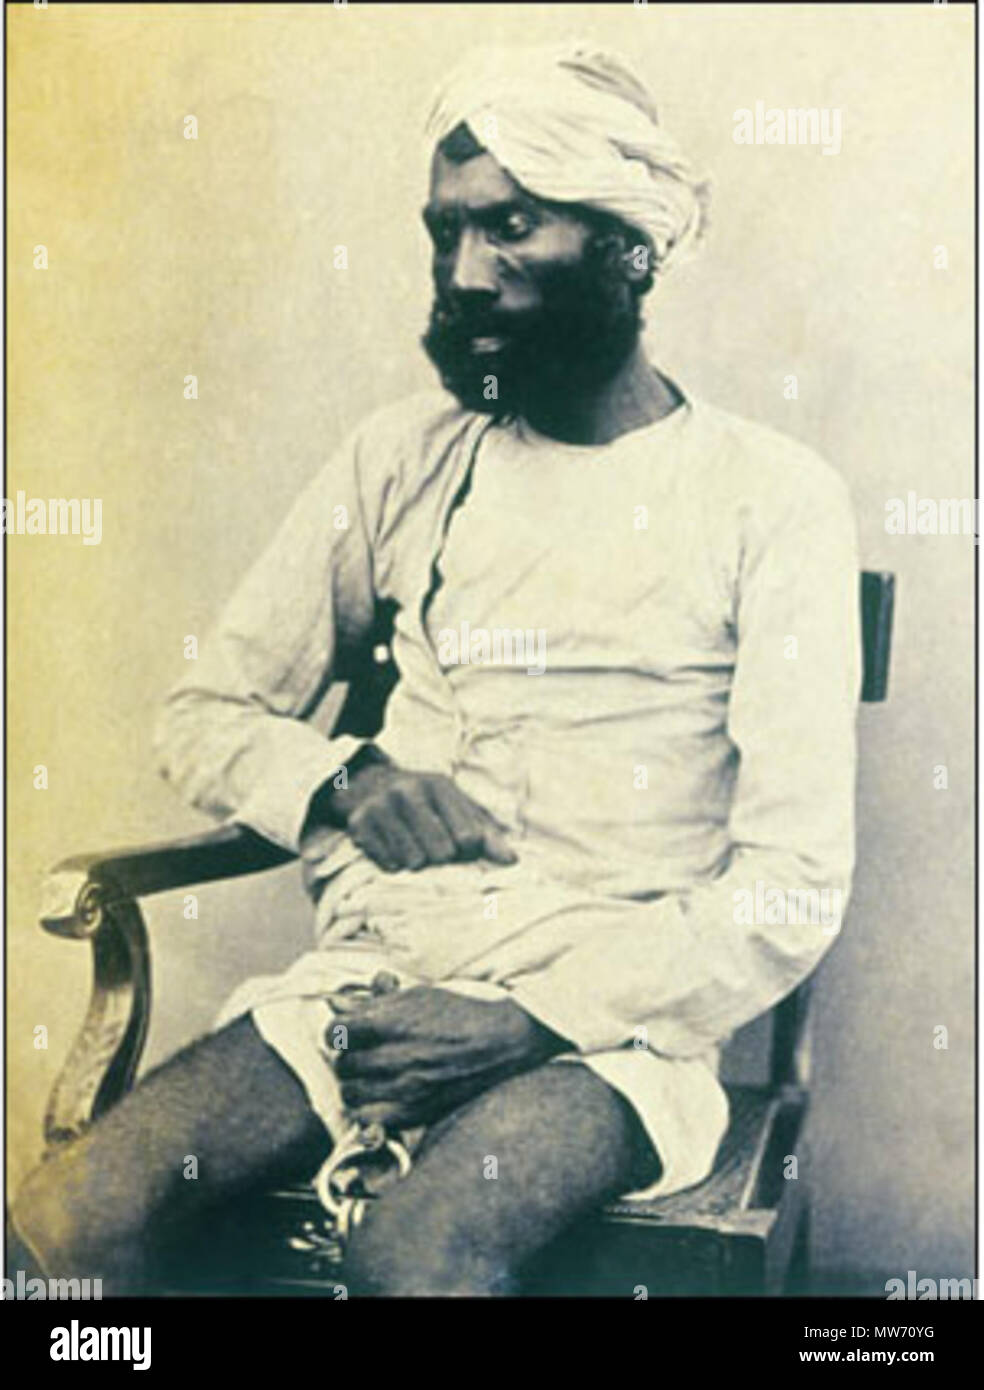 20 eine handschriftliche Beschriftung erkennt den Mann als Gungoo Mehter wer bei Kanpur für das Töten viele der Sati Chaura Überlebenden, darunter viele Frauen und Kinder versucht wurde. Er wurde für schuldig befunden und bei Kanpur am 8. September 1859 gehängt. Stockfoto